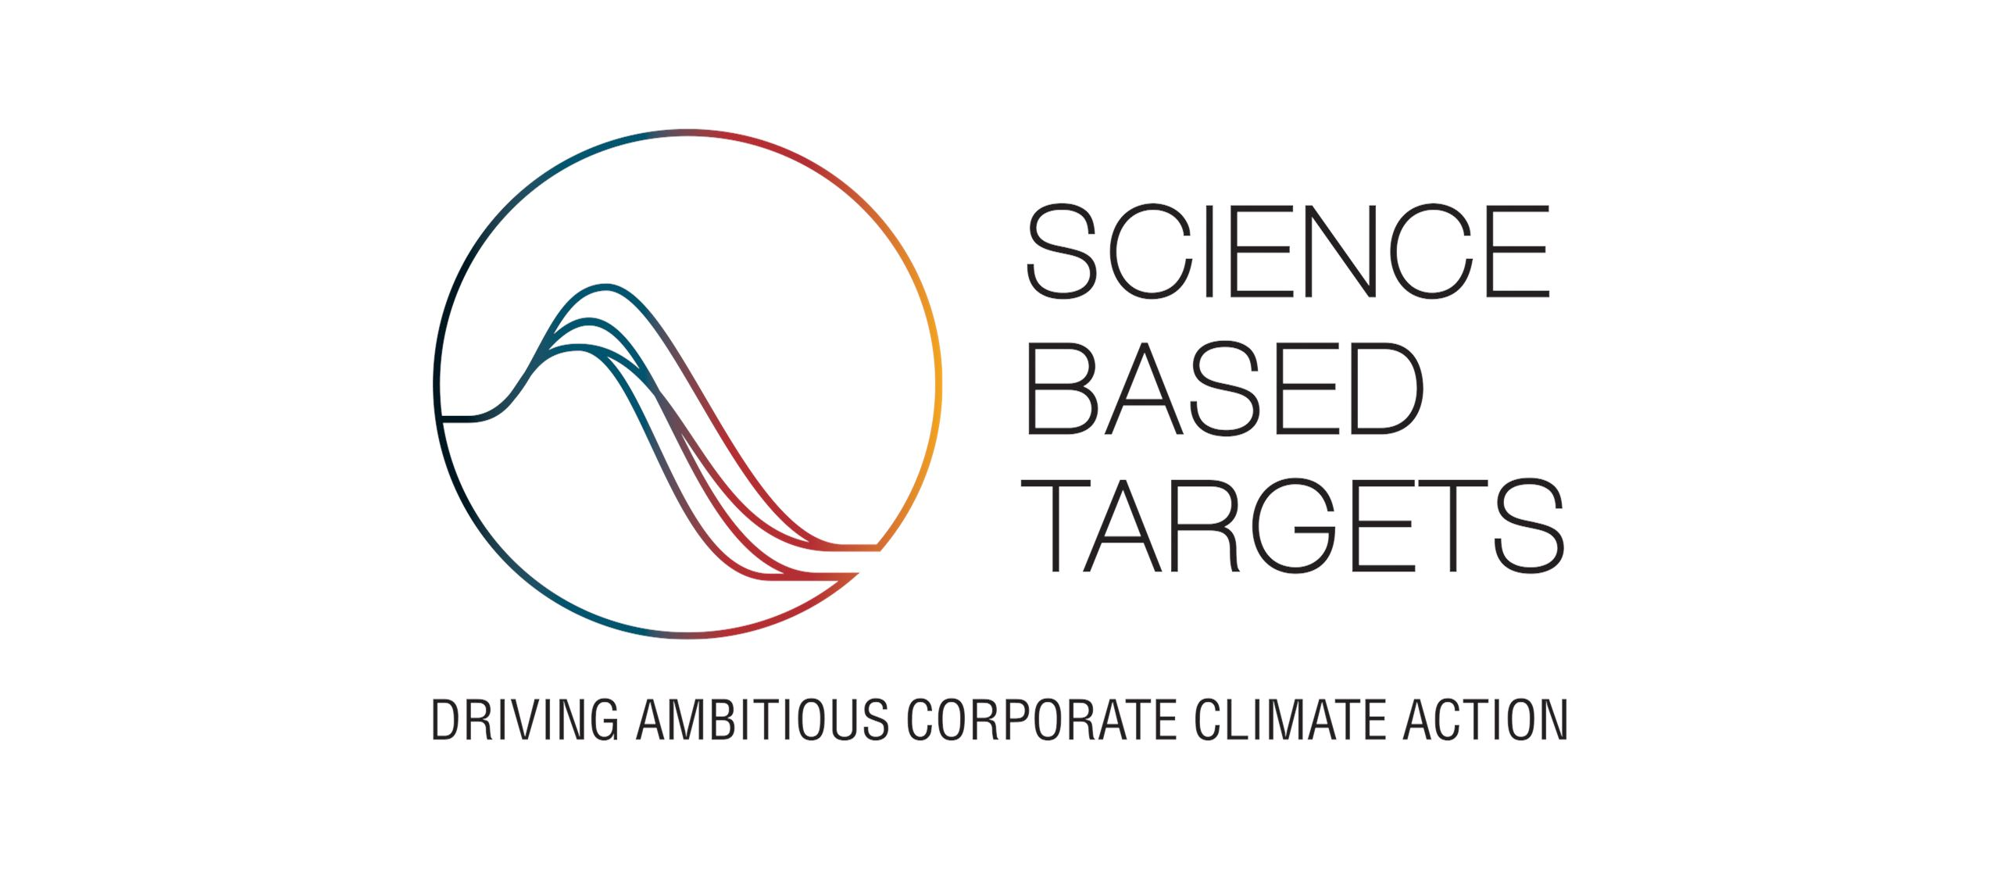 智易通過SBTi減碳及淨零的目標審查